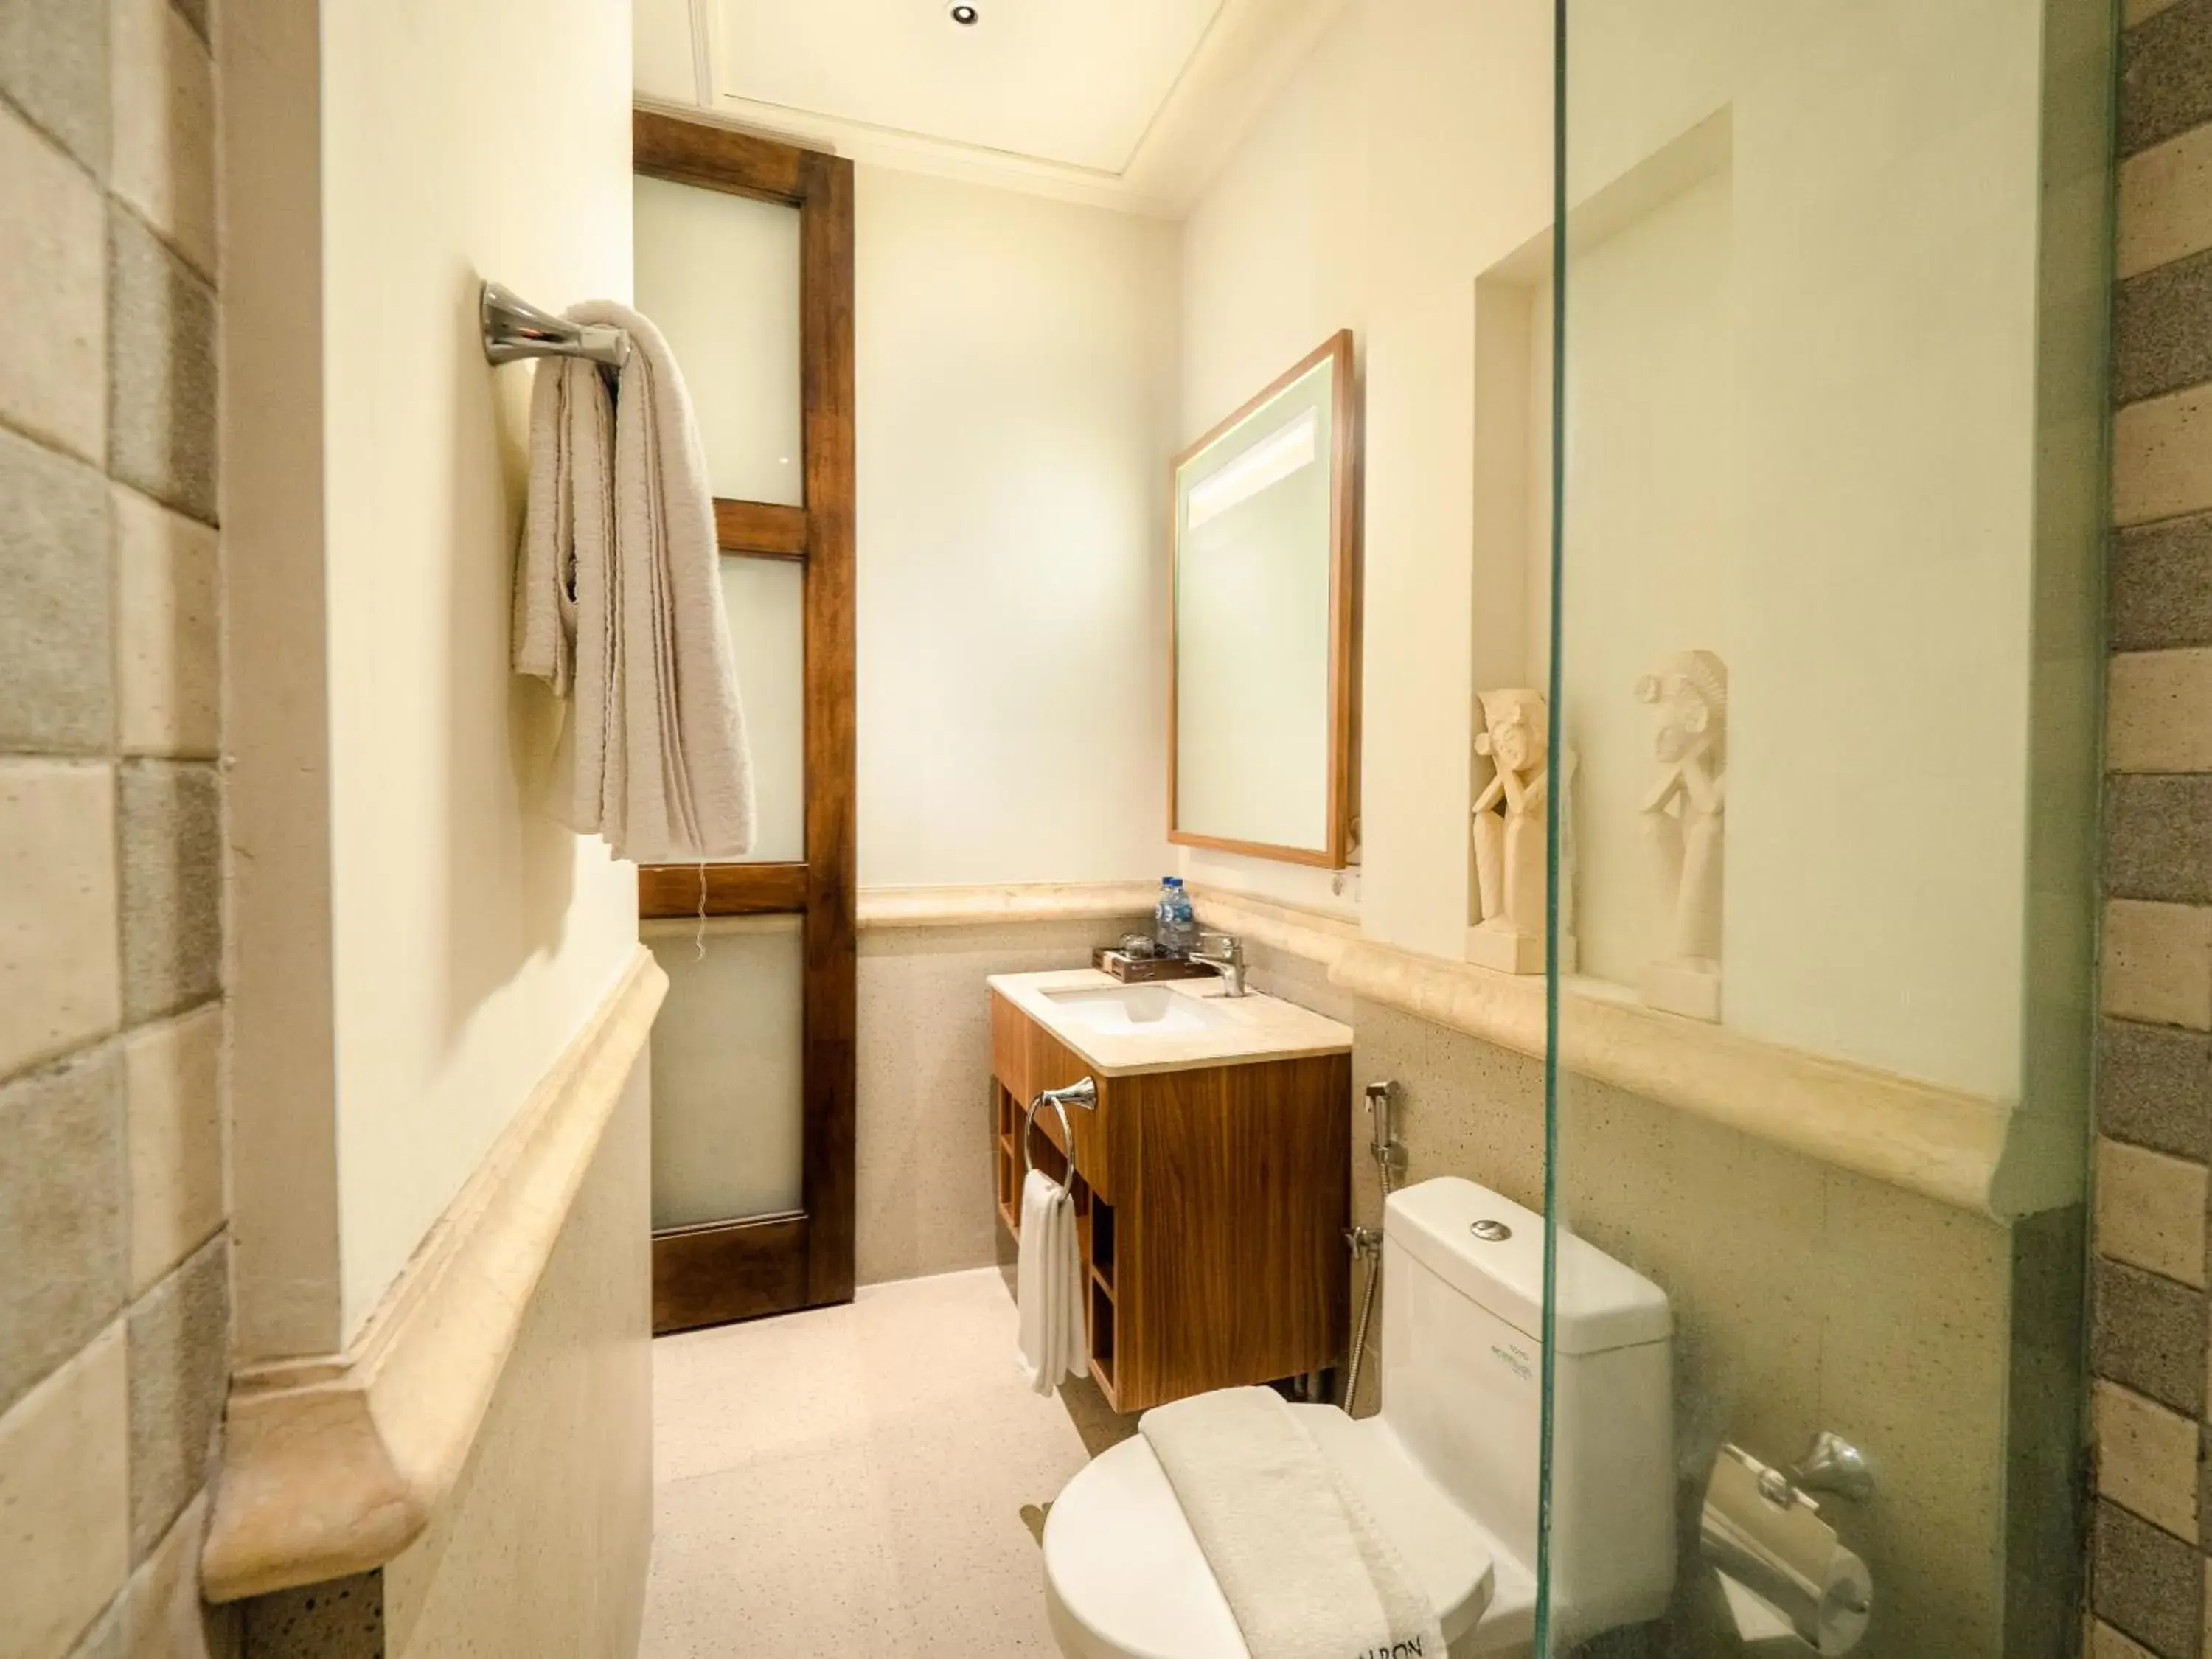 Bathroom in Alron Hotel Kuta Powered by Archipelago